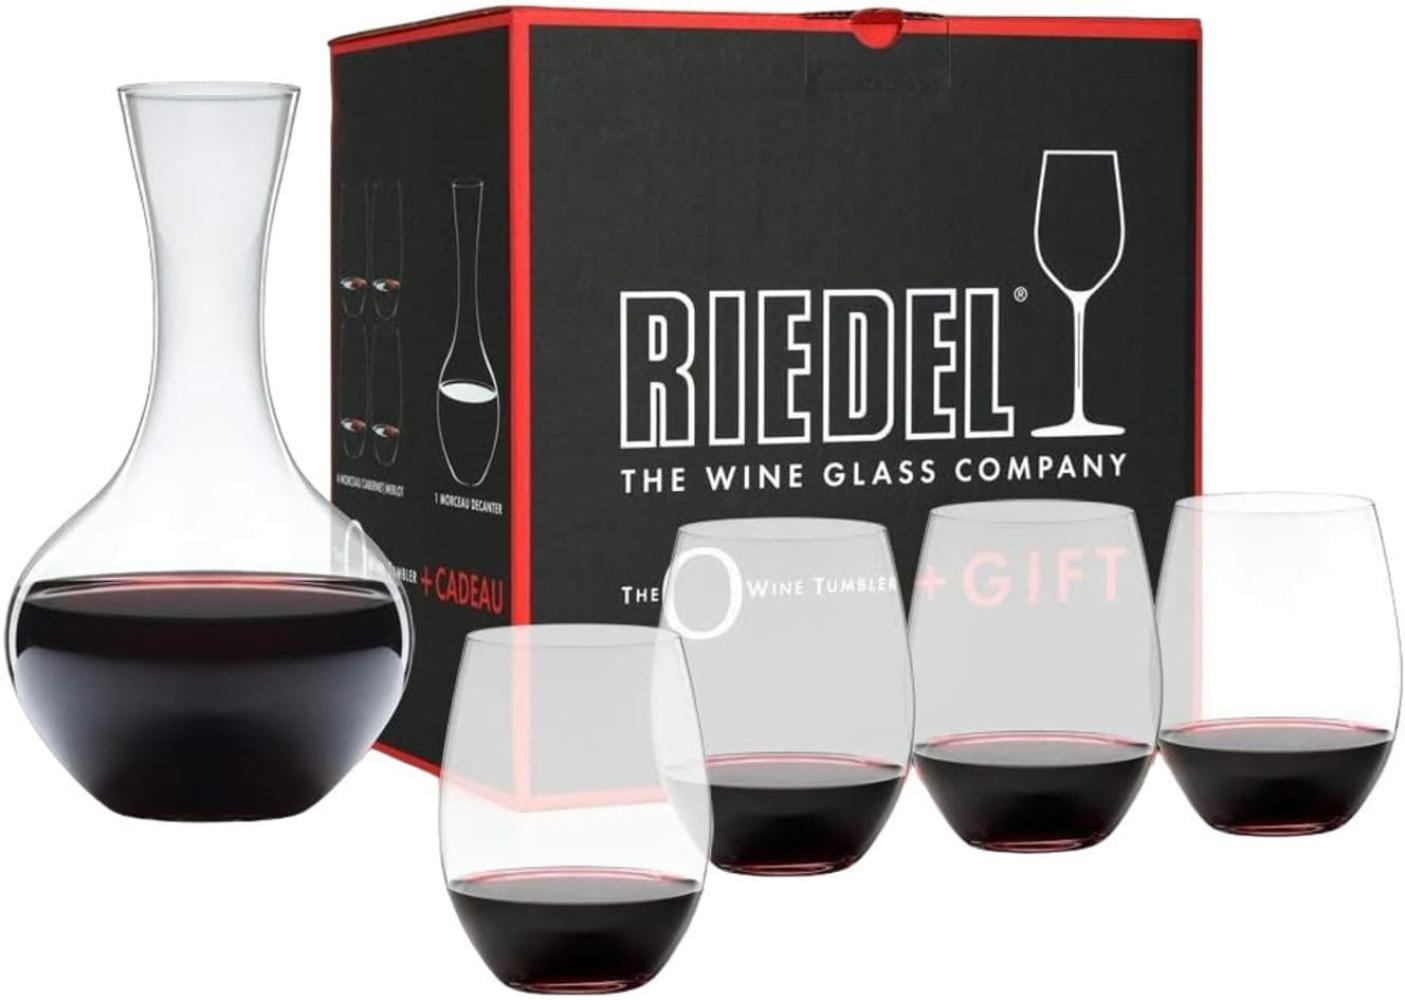 Riedel O + Geschenk, 4 Cabernet Weingläser & Dekanter Syrah, hochwertiges Glas, 5414/30 Bild 1